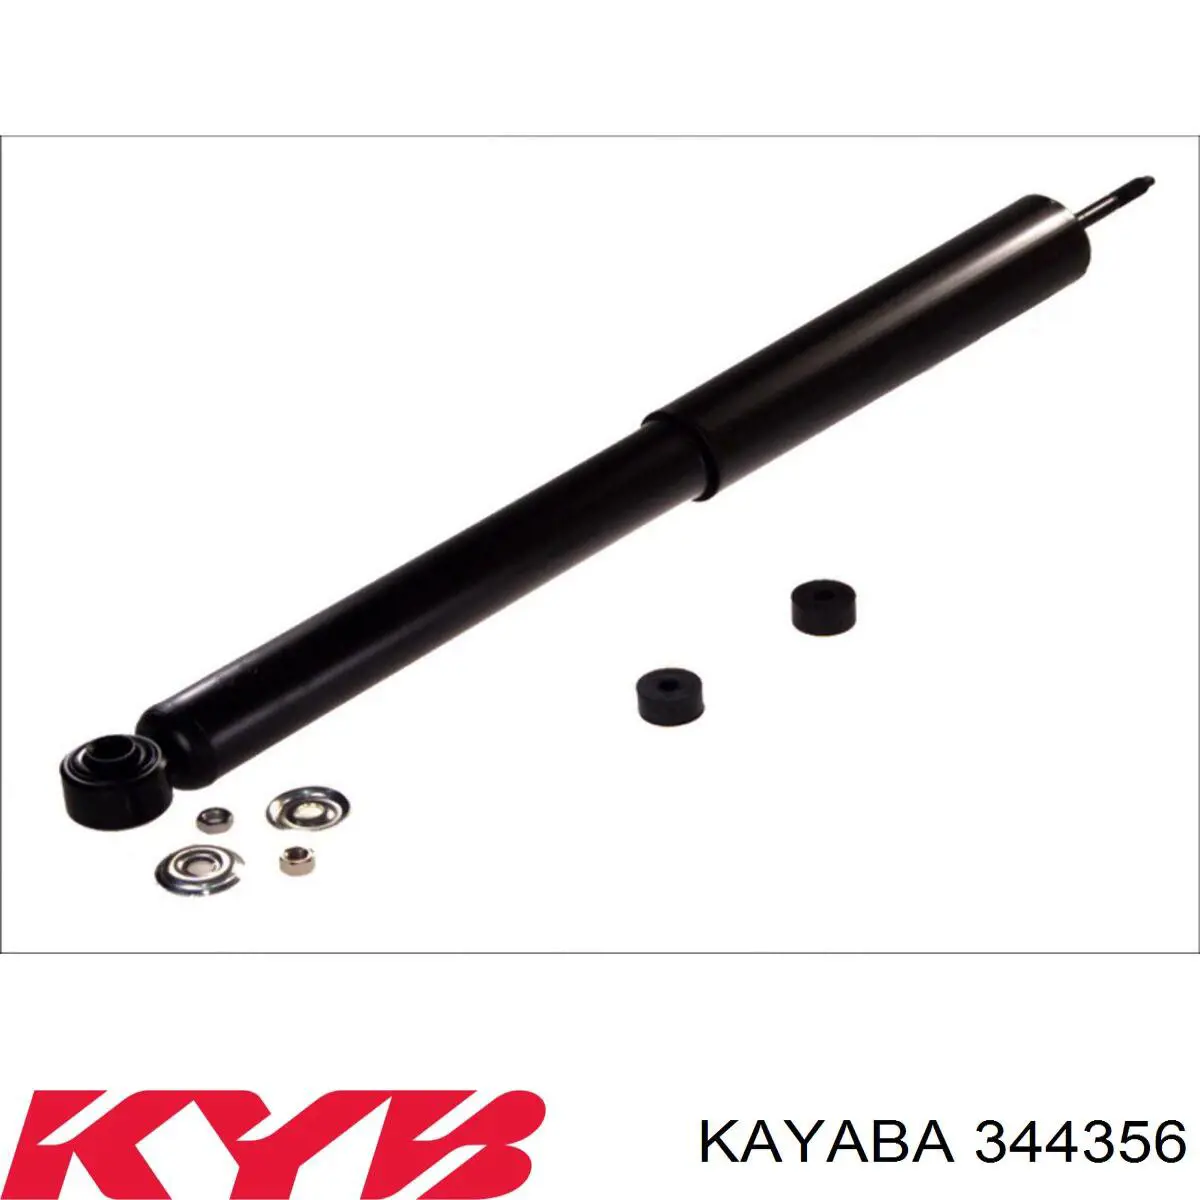 344356 Kayaba amortiguador trasero